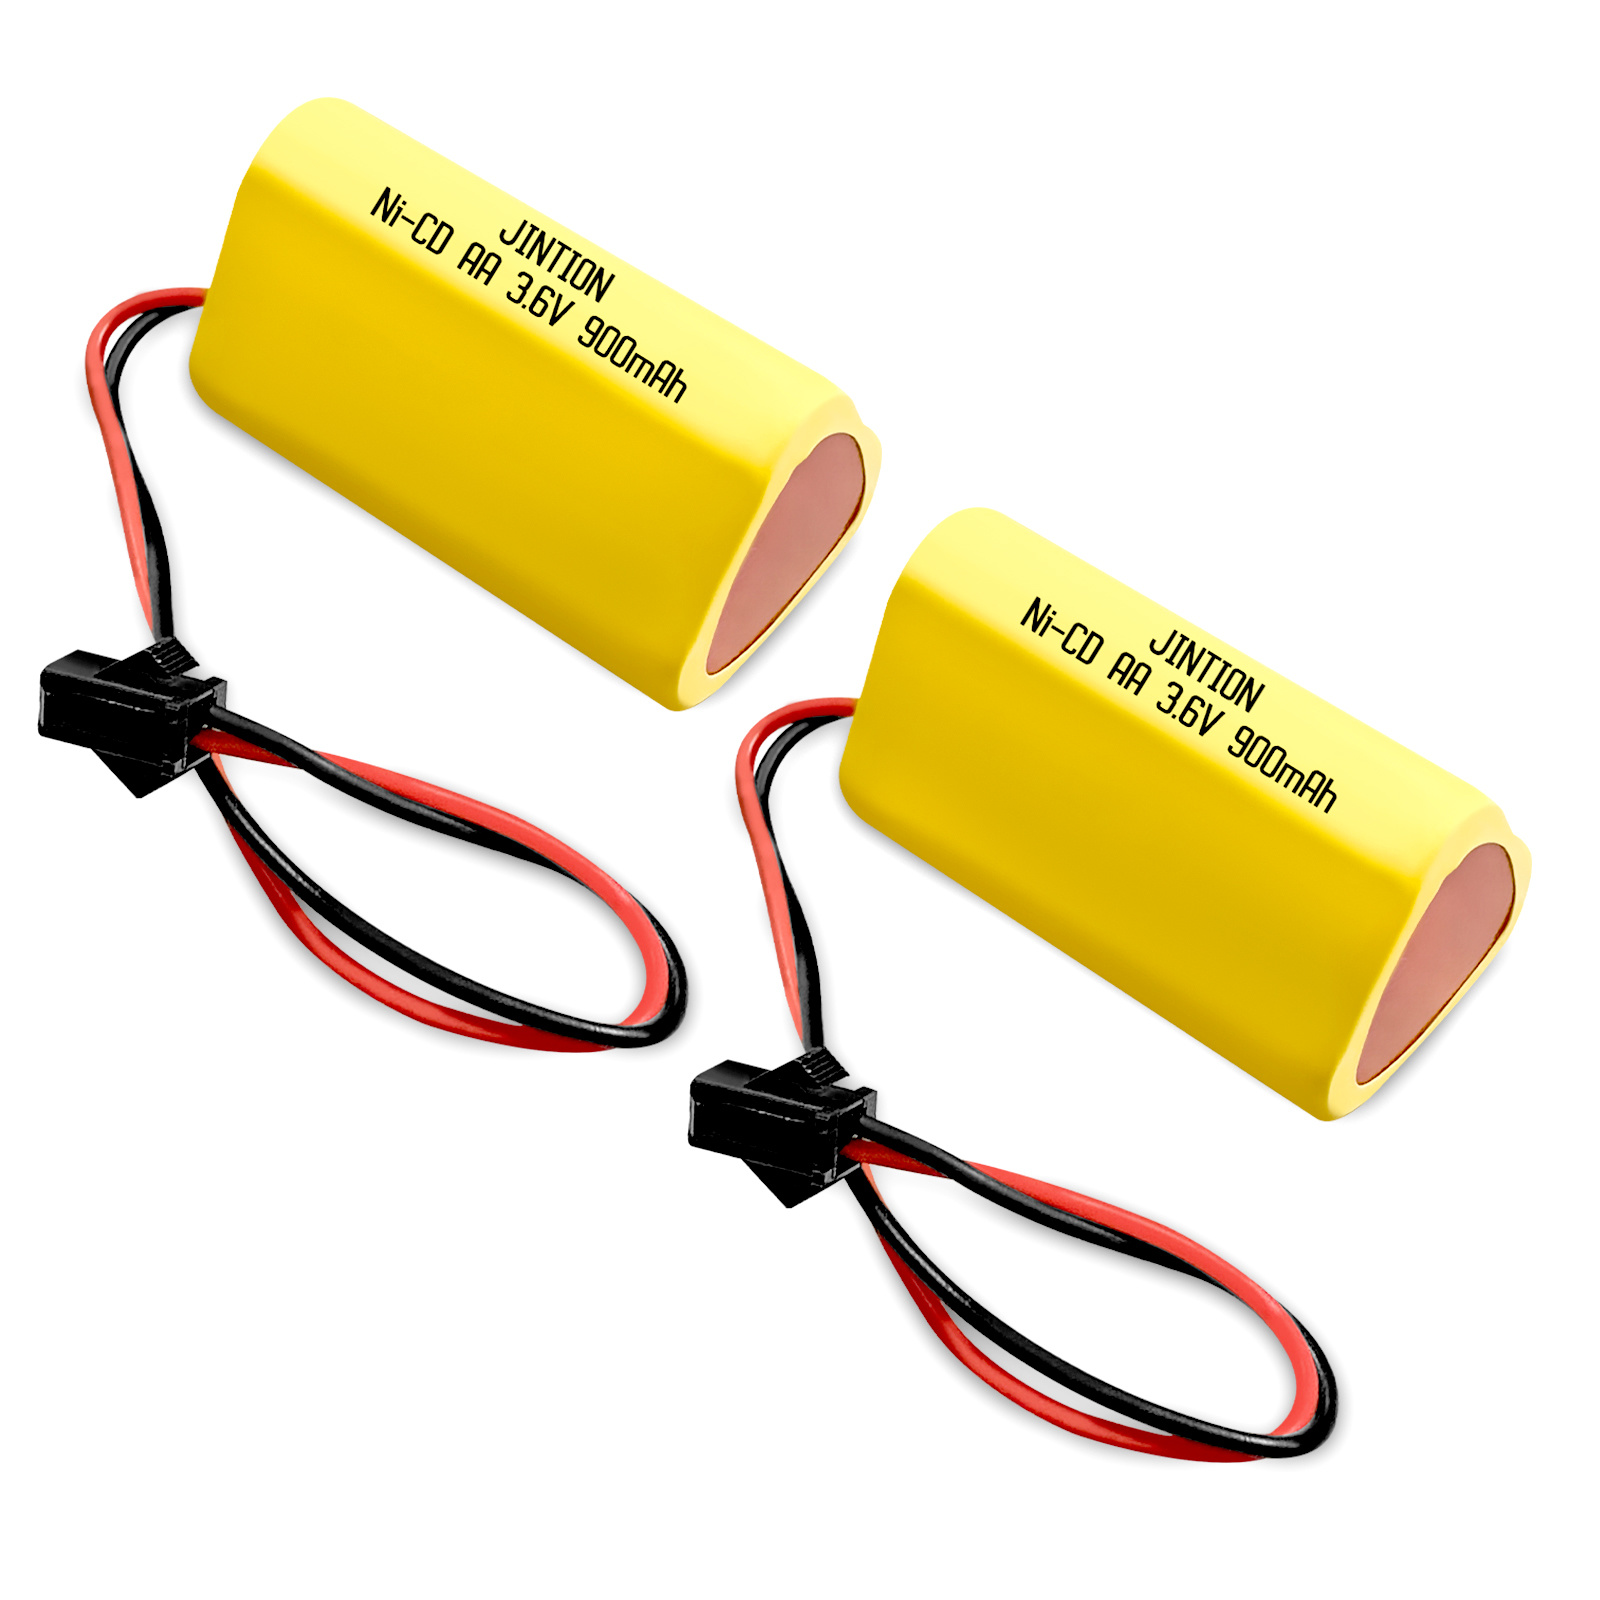 镍镉电池AA 900mAh 3.6V 紧急出口灯消防出口标志灯应急灯